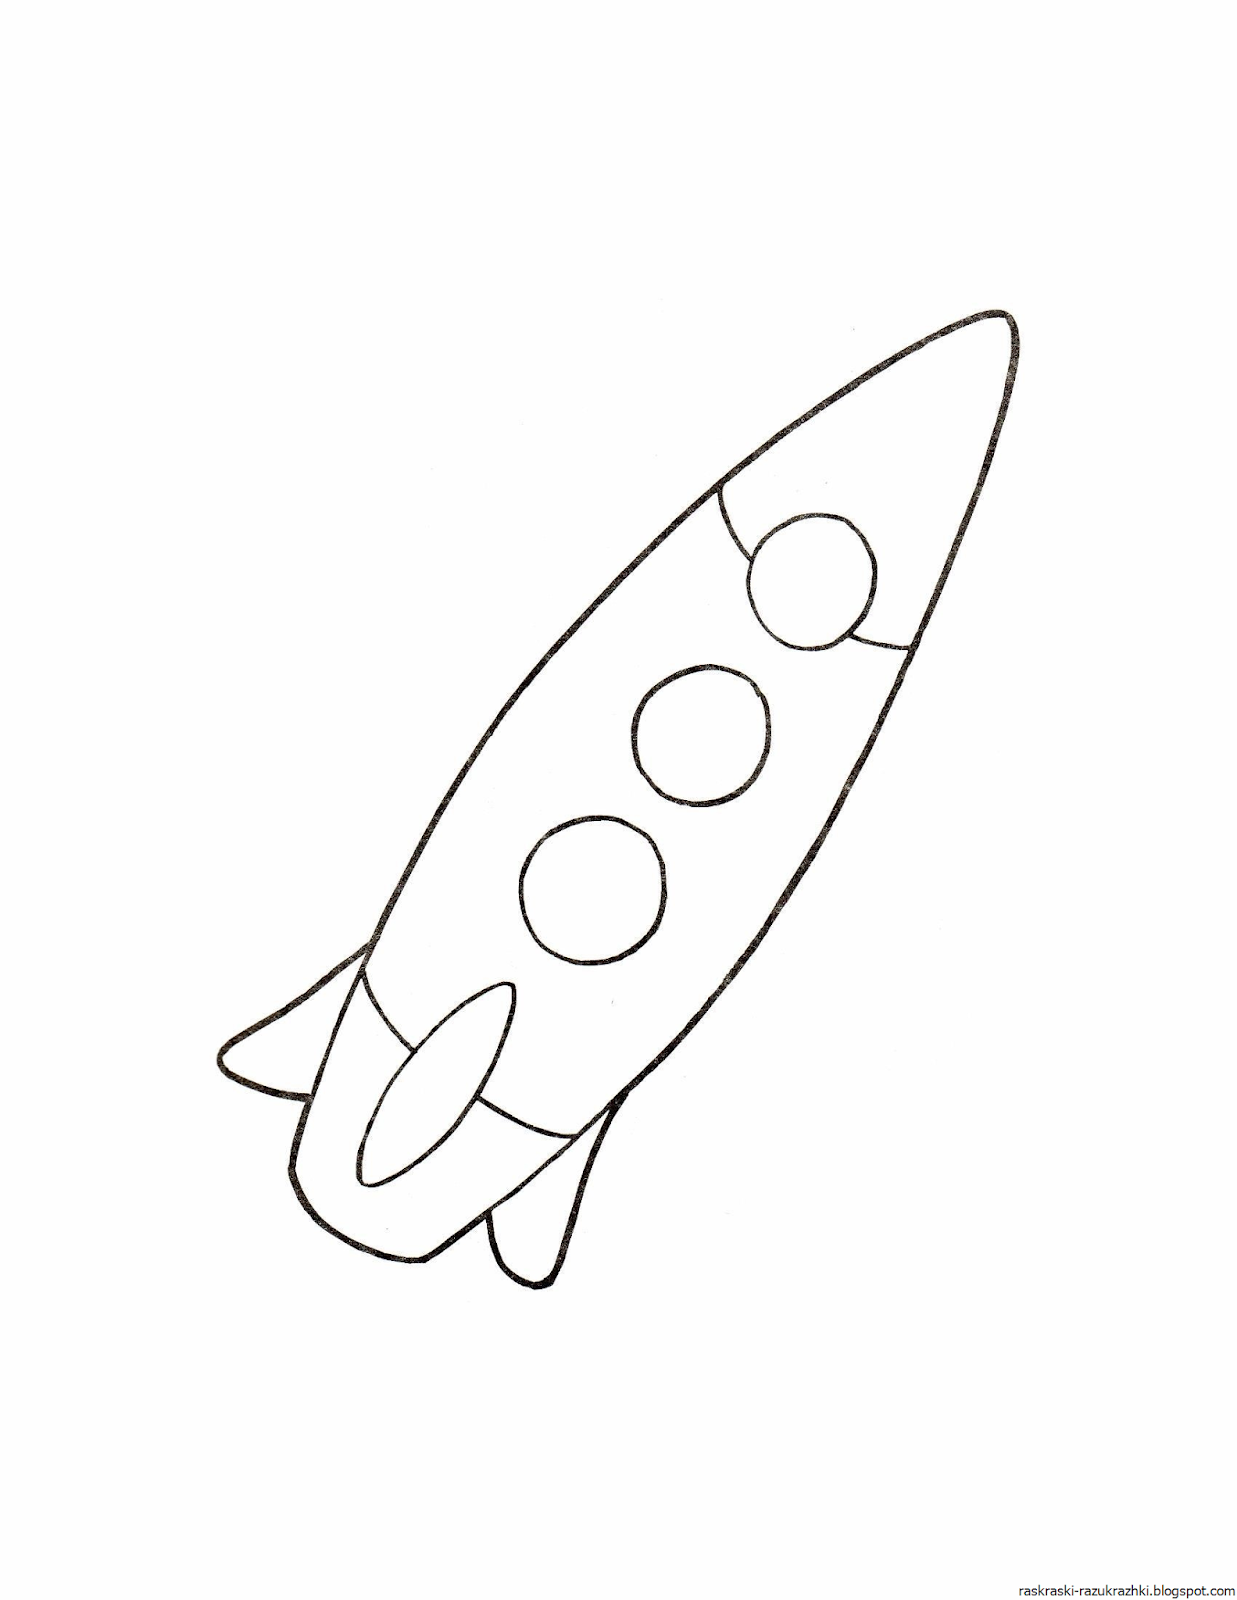 Ракета шаблон для вырезания распечатать. Ракета раскраска. Ракета раскраска для детей. Космическая ракета раскраска. Раскраска ракета для детей 3-4 лет.